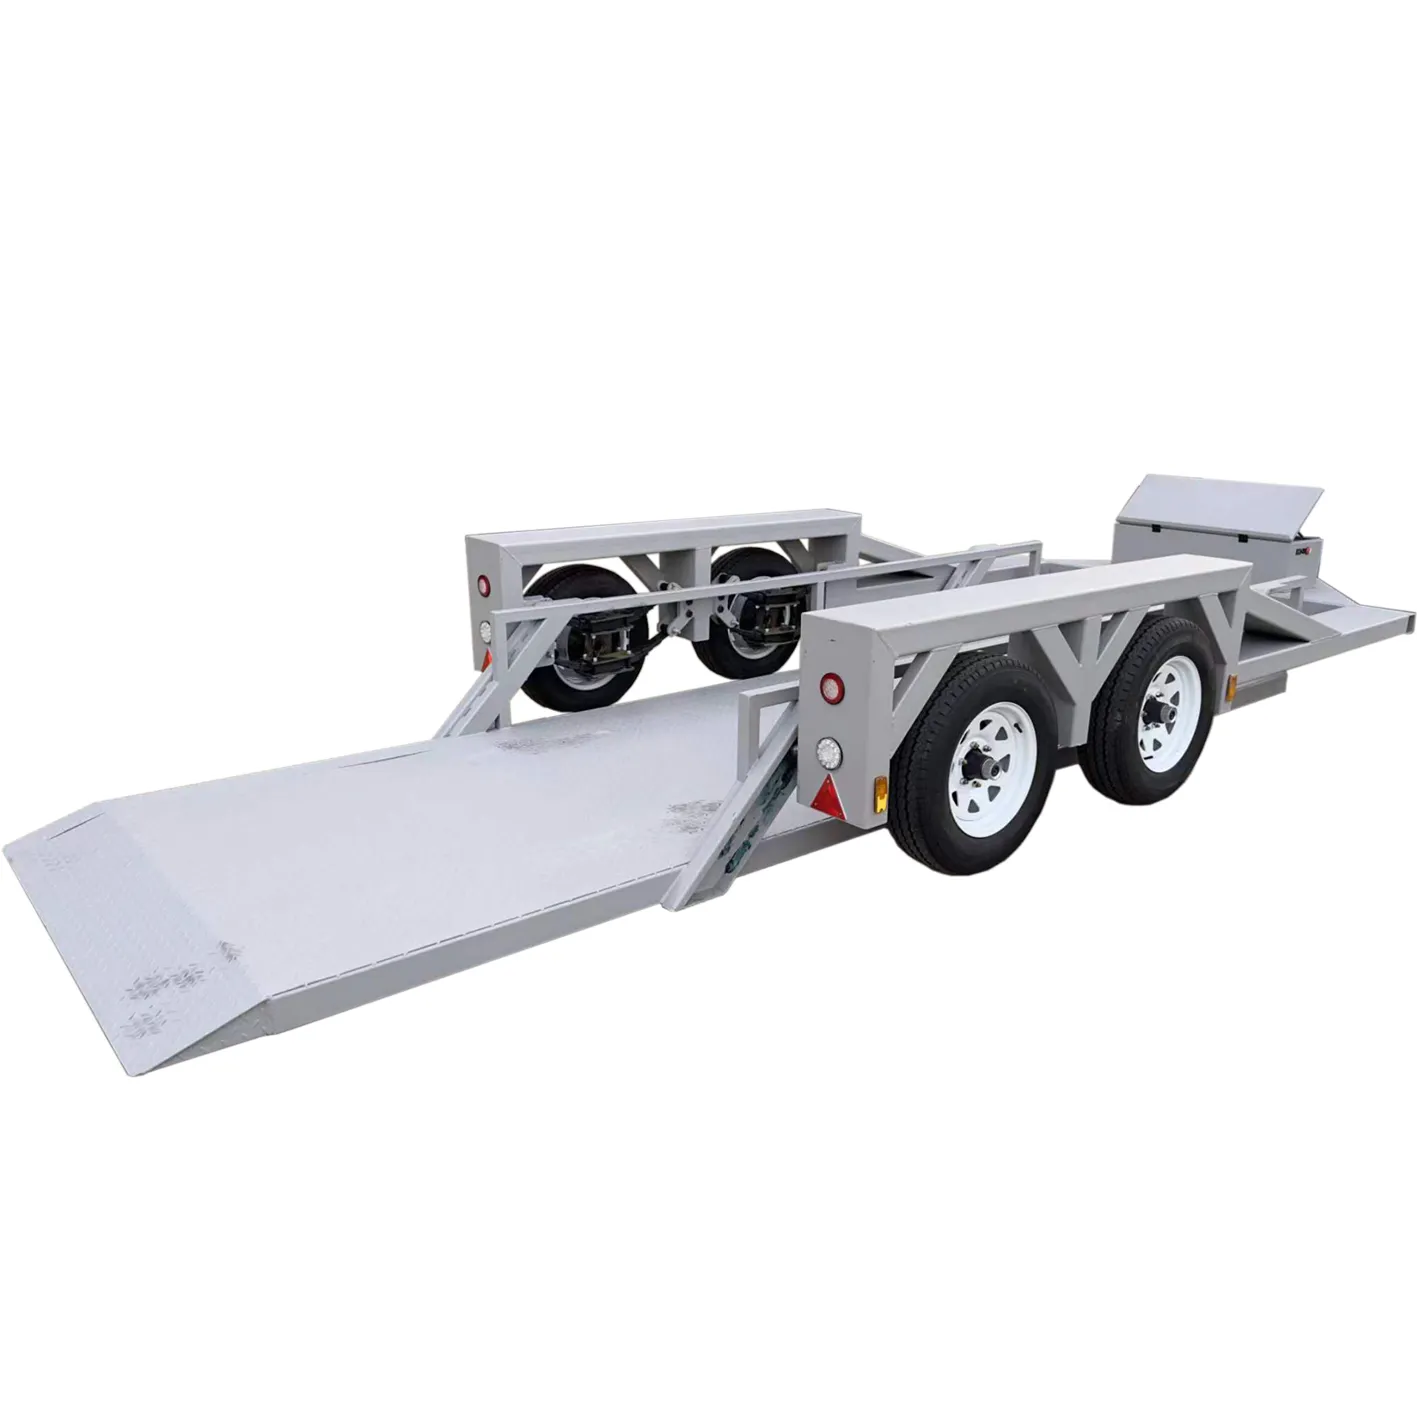 Gaya baru kualitas tinggi flatbed tas udara suspensi Forklift trailer mobil balap ATV UTV mobil trailer